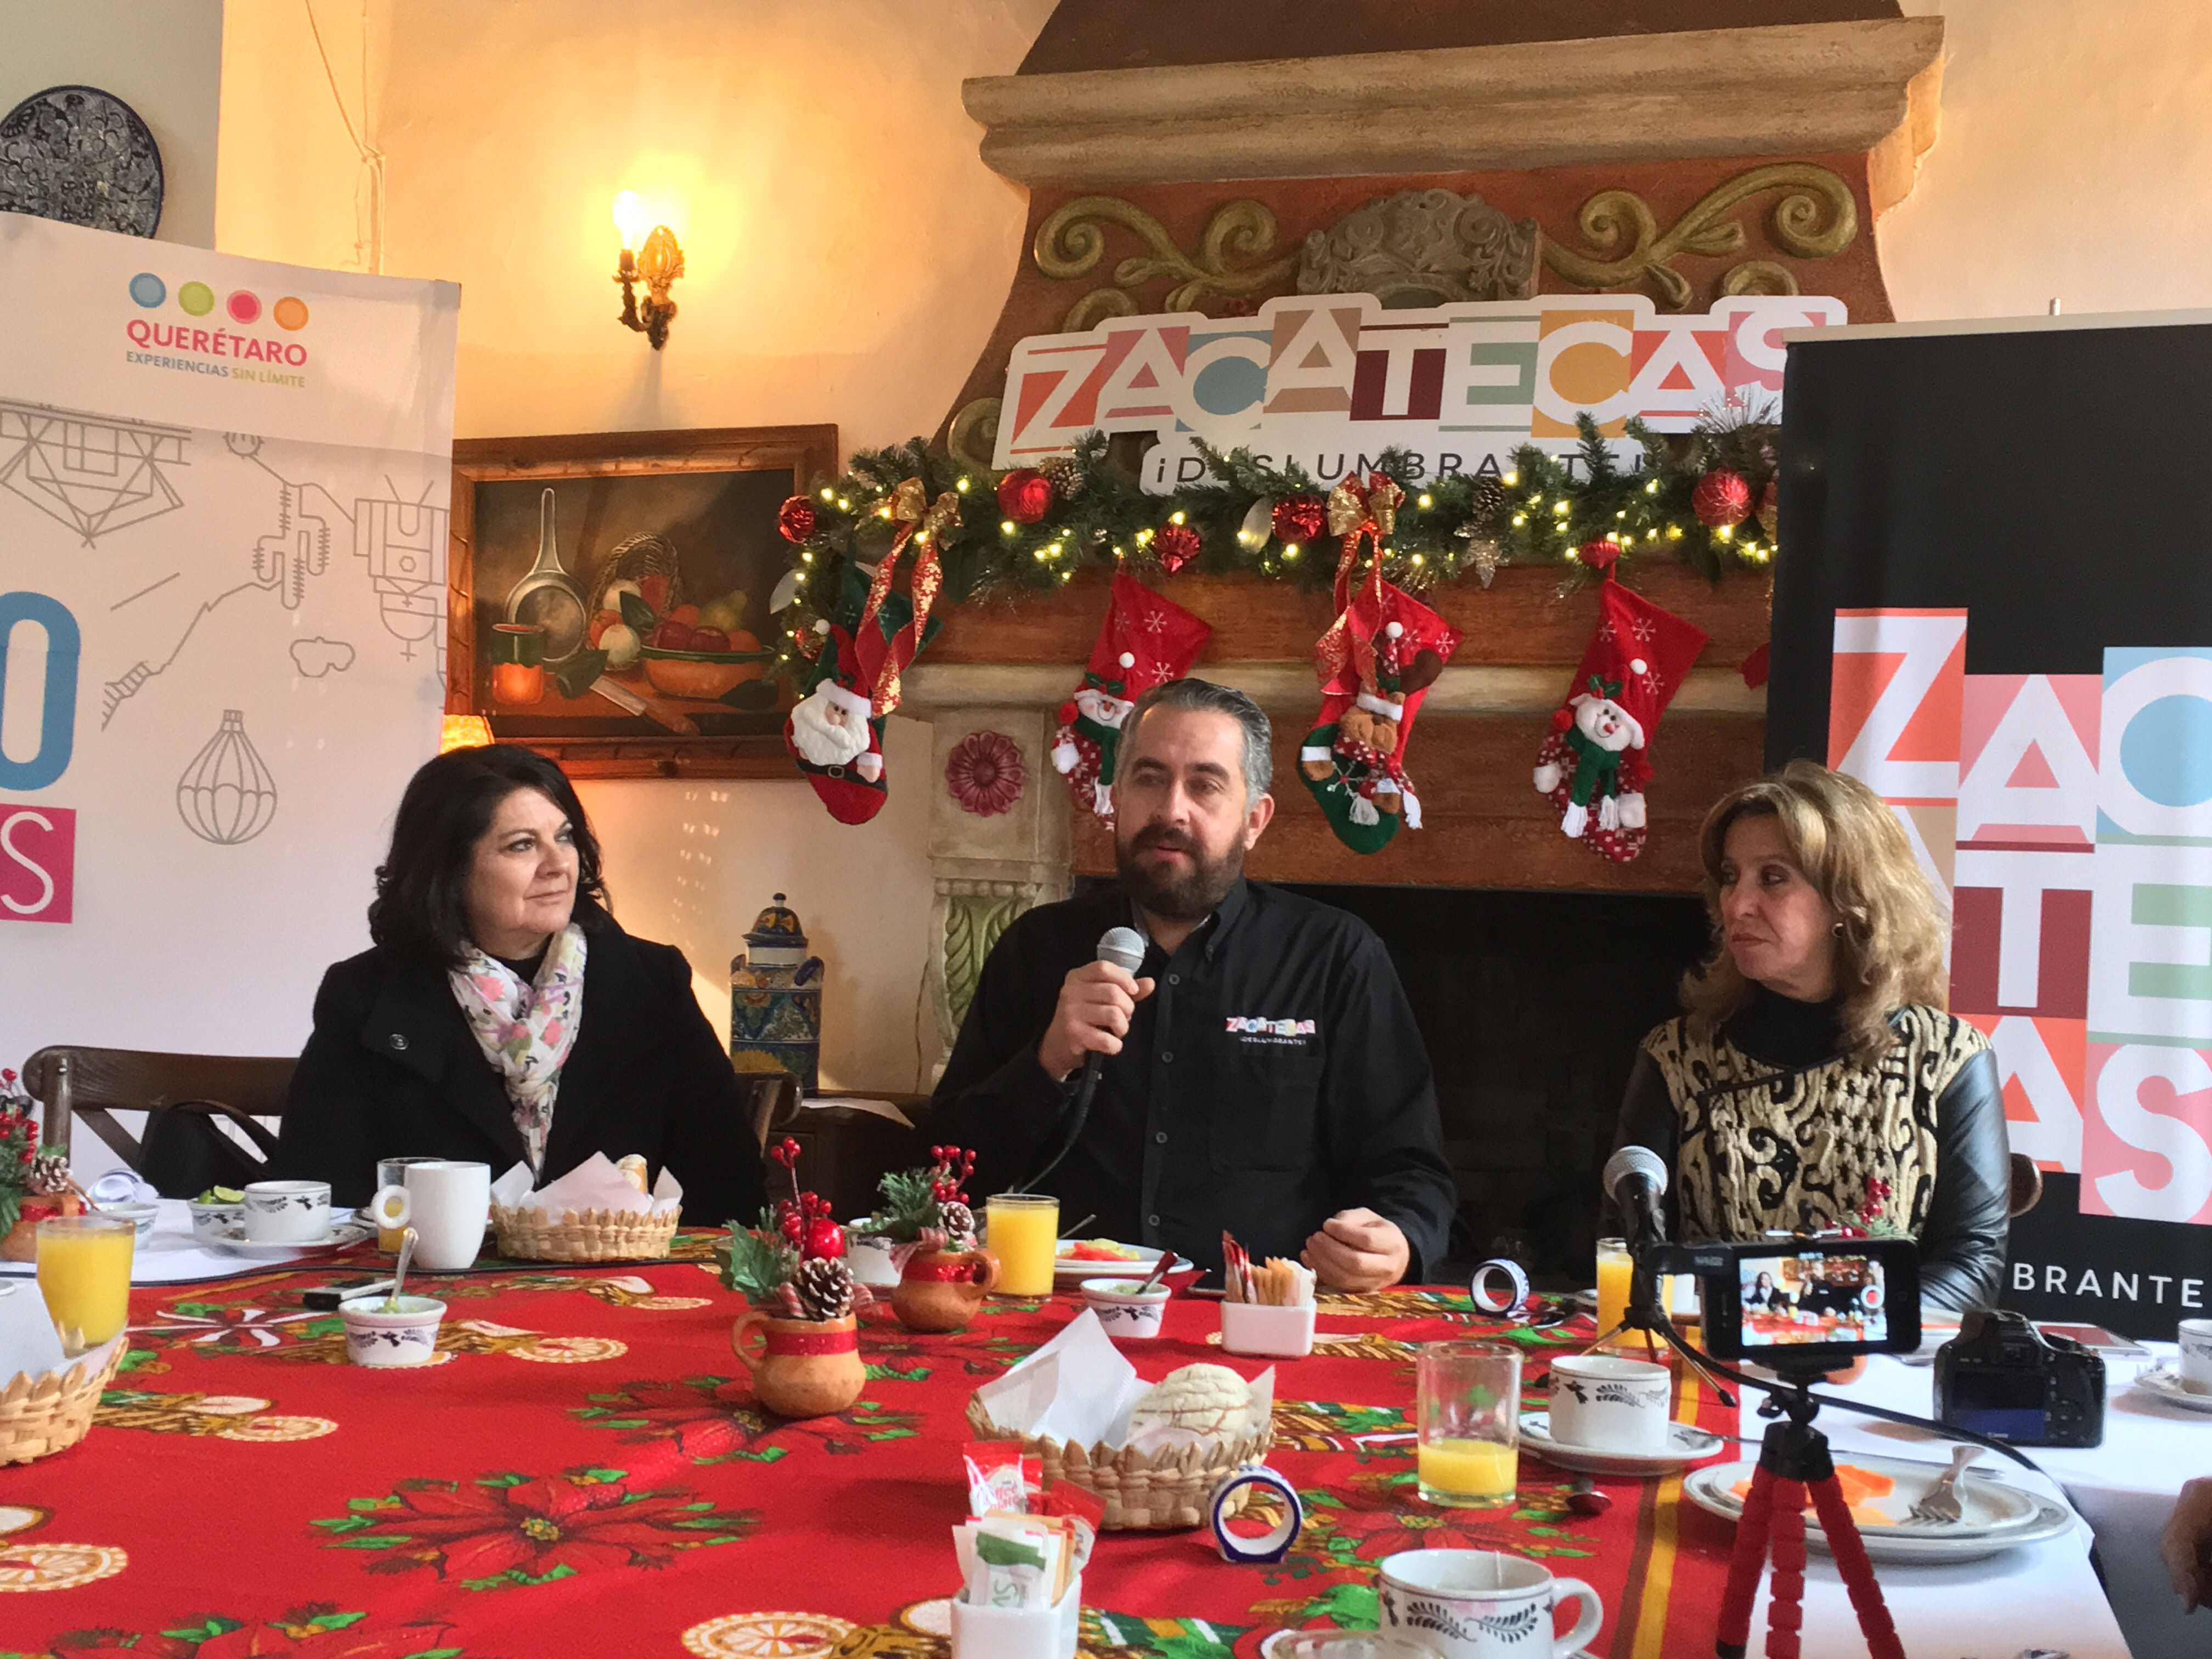  Invitan a queretanos a vivir la Navidad en la histórica Zacatecas